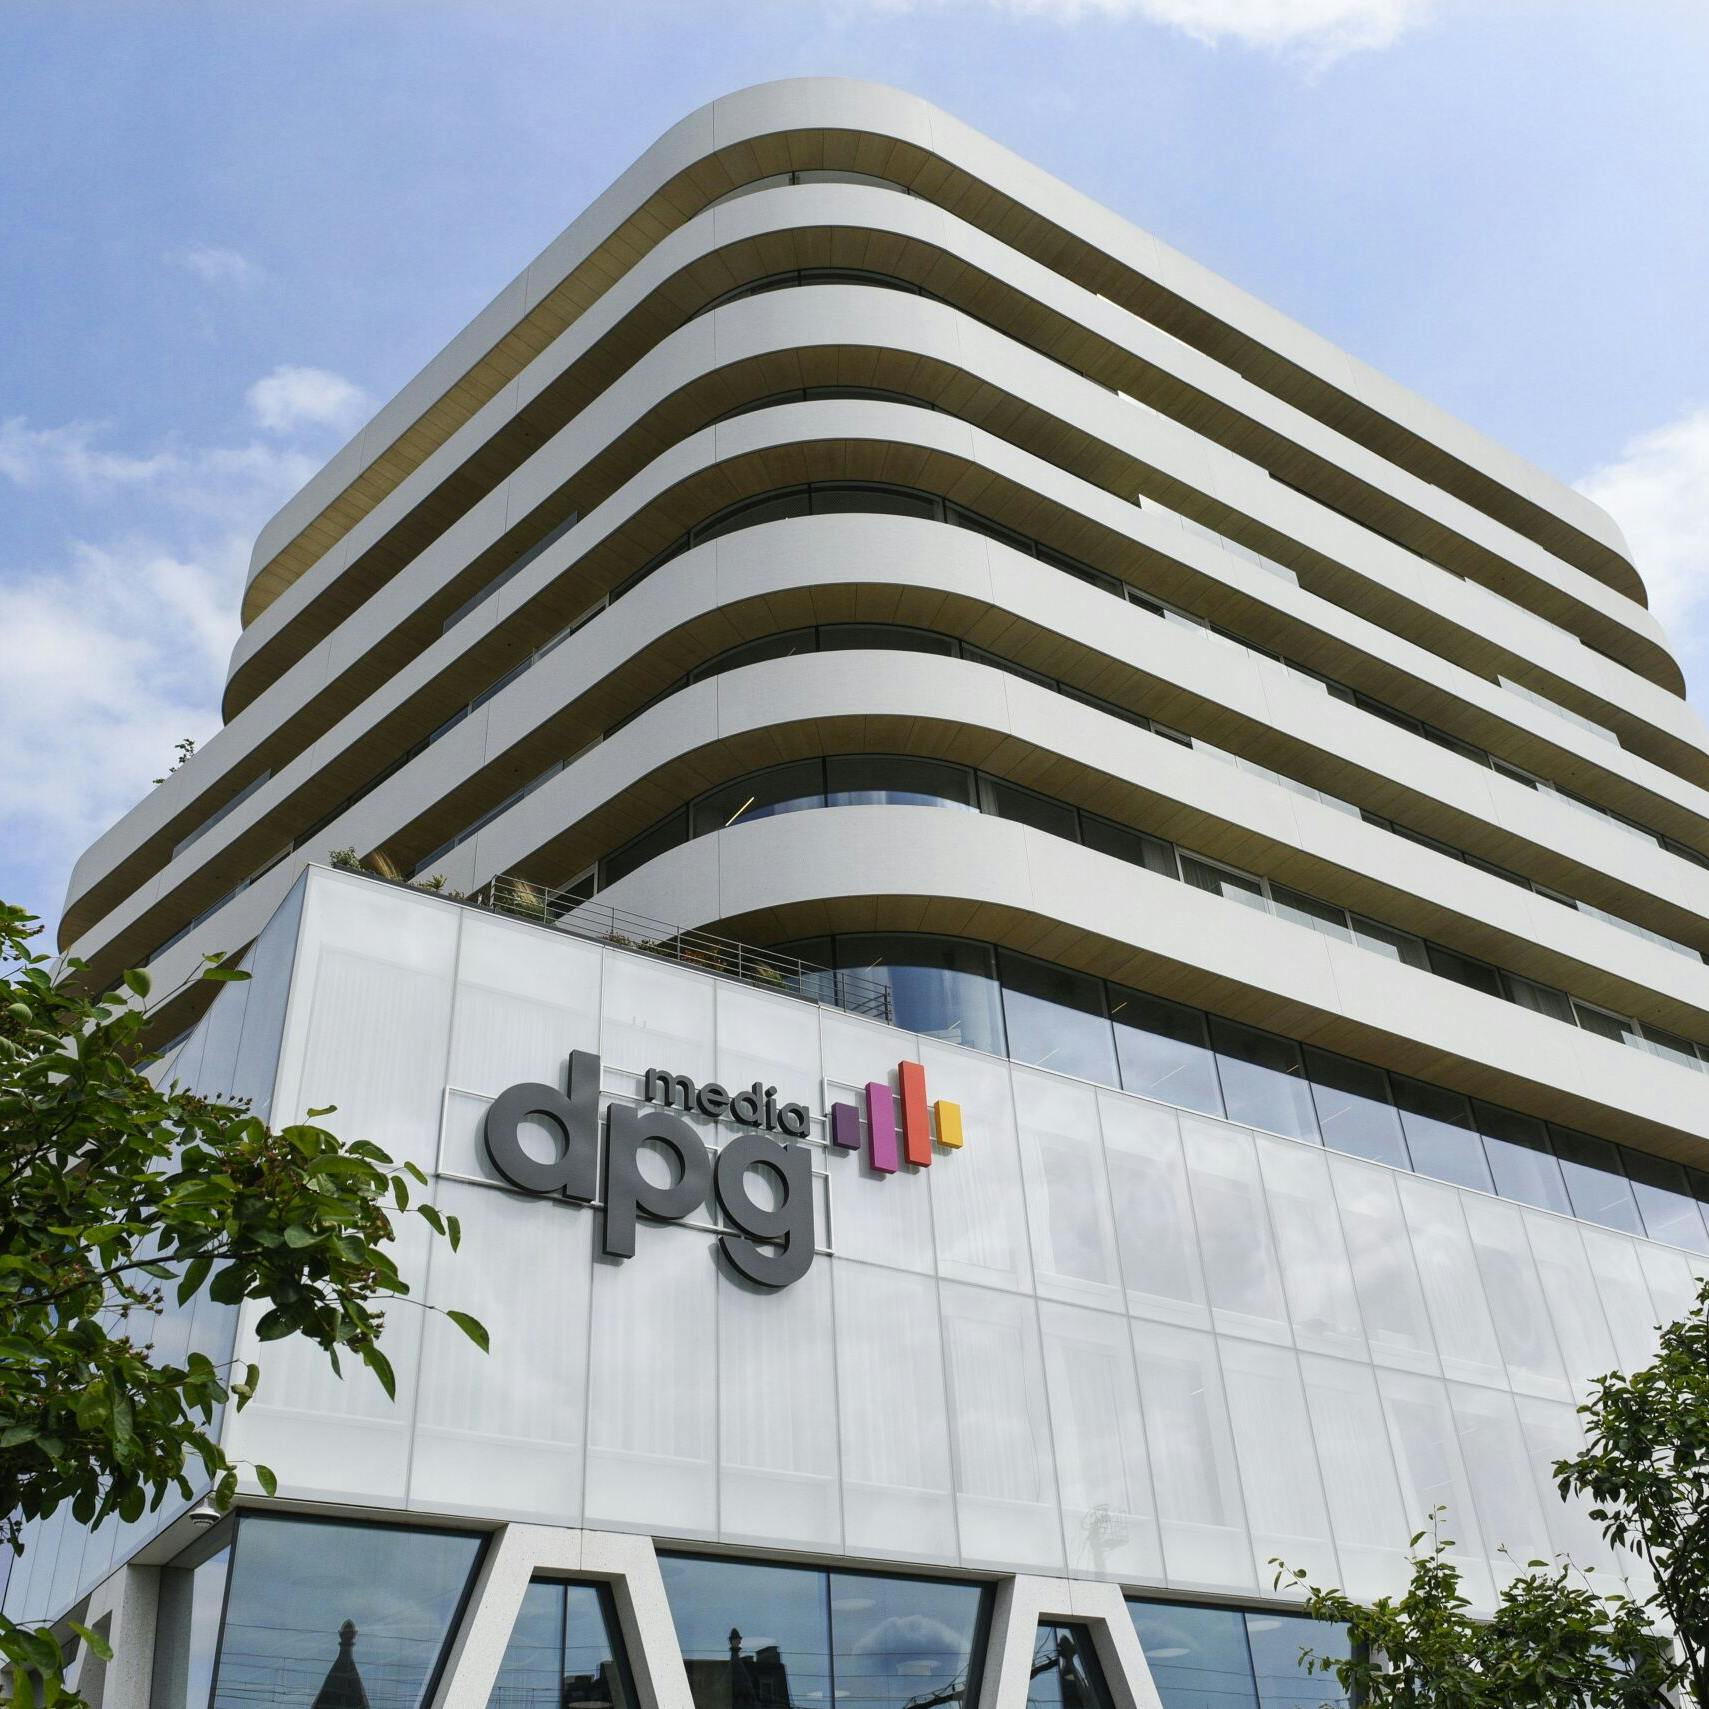 DPG vreest voor Qmusic om fusie RTL en Talpa